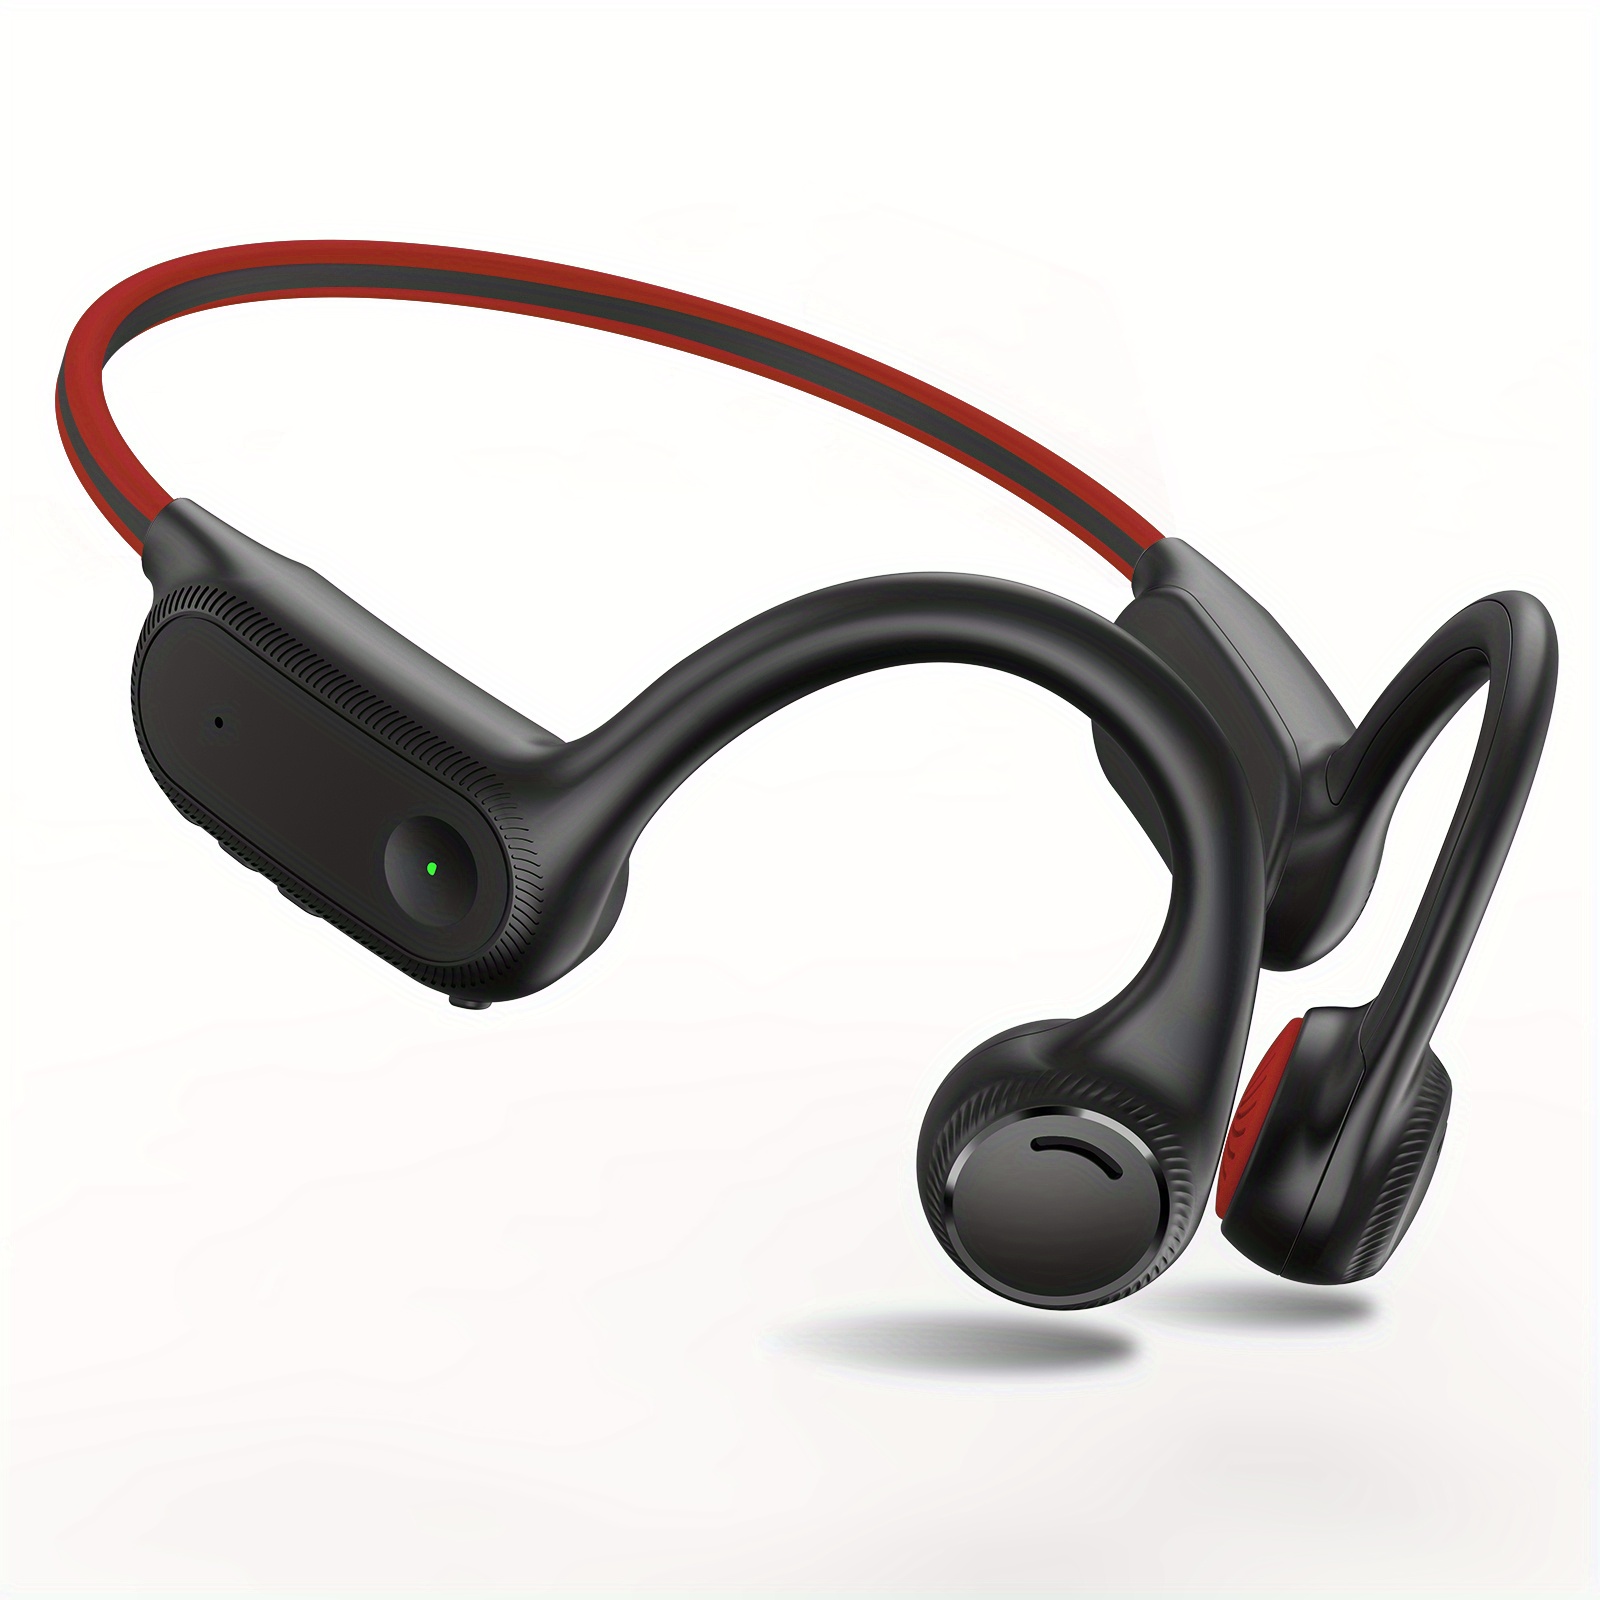  TapperSciences Auriculares inalámbricos Bluetooth deportivos  para correr, gimnasio, entrenamiento, micrófono, graves profundos en el  oído, cancelación de ruido, gancho para colocar sobre la oreja, resistente  al agua : Electrónica